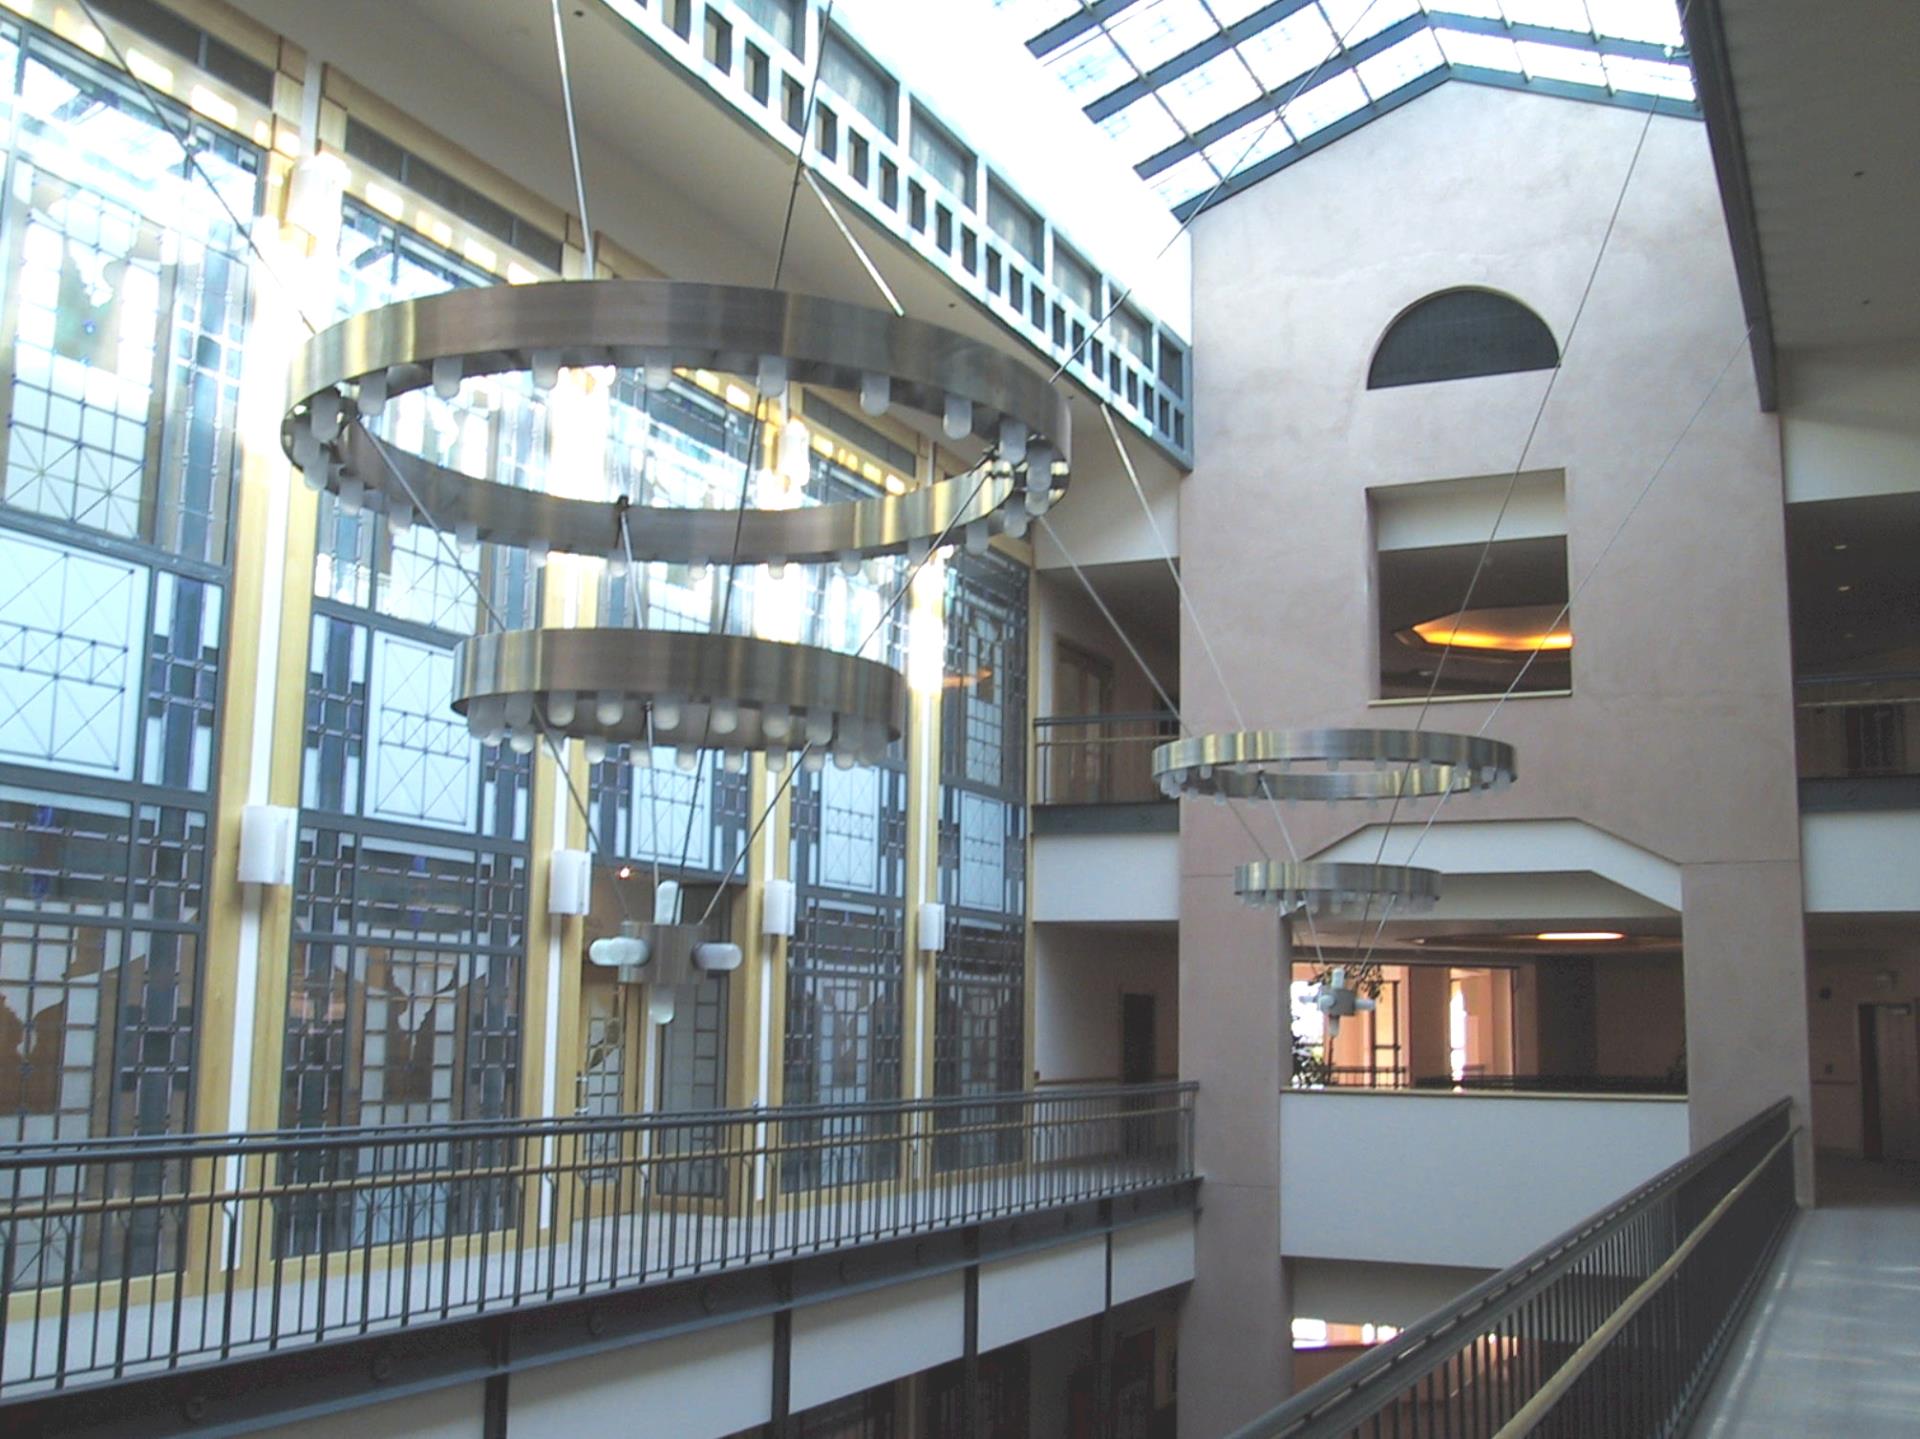 City Hall interior